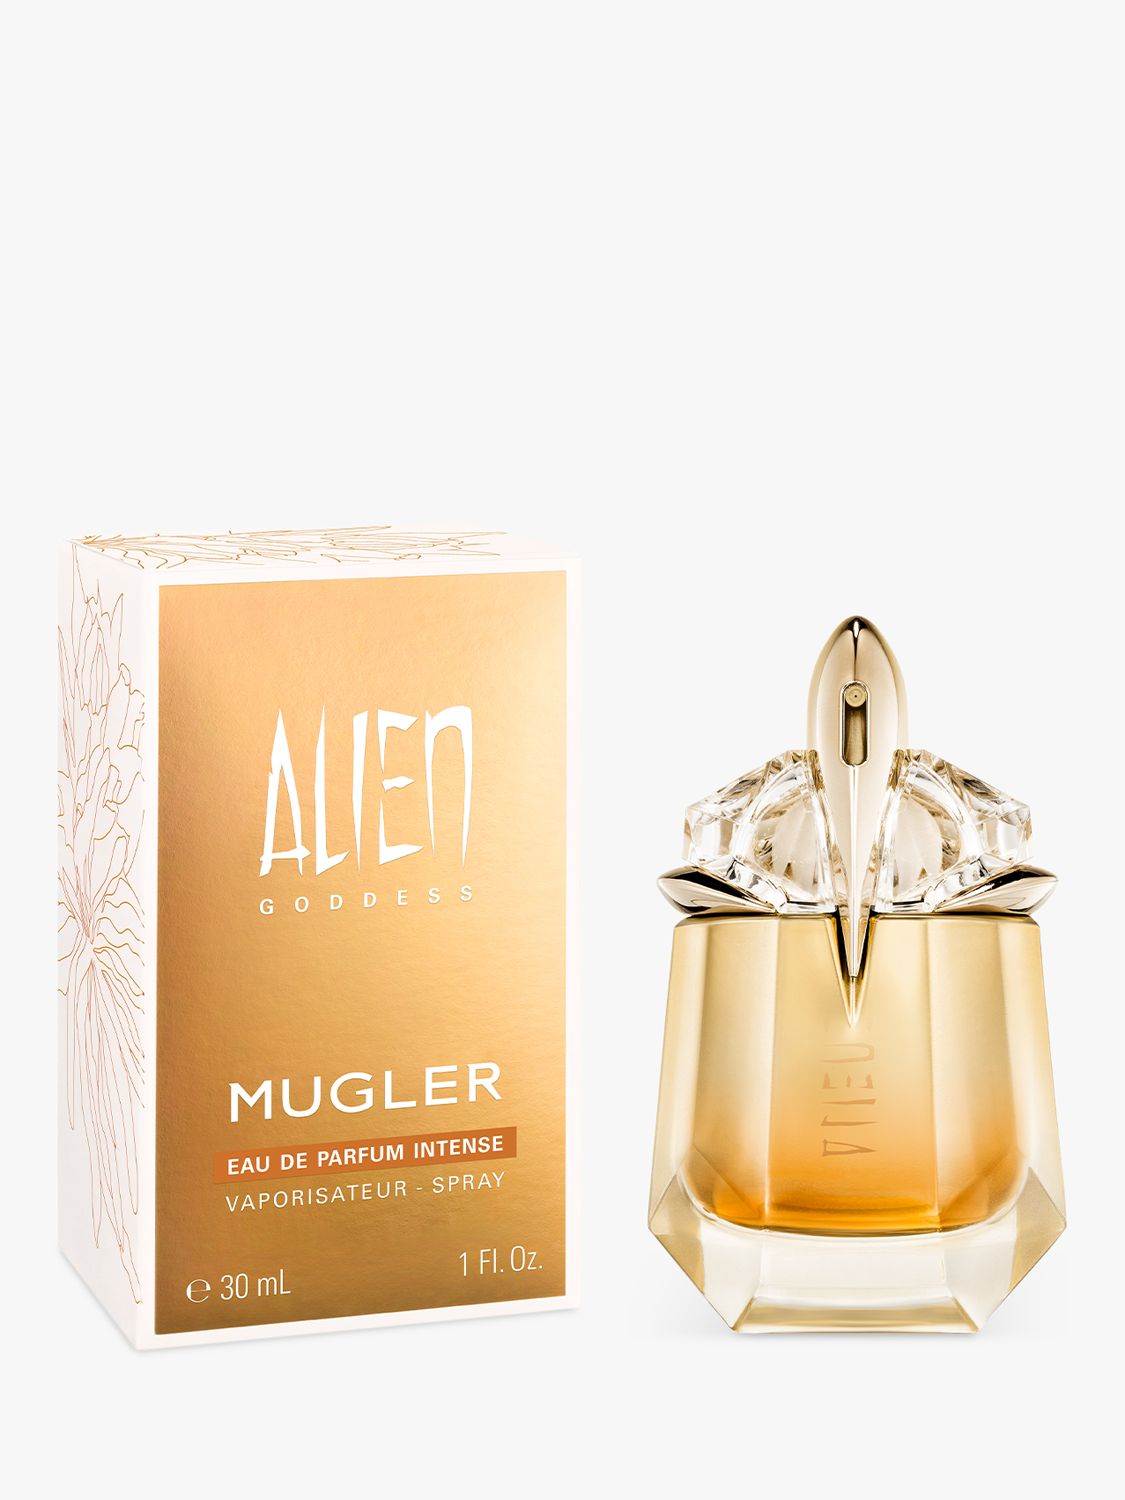 Mugler Alien Goddess Eau de Parfum Intense, 30ml 2